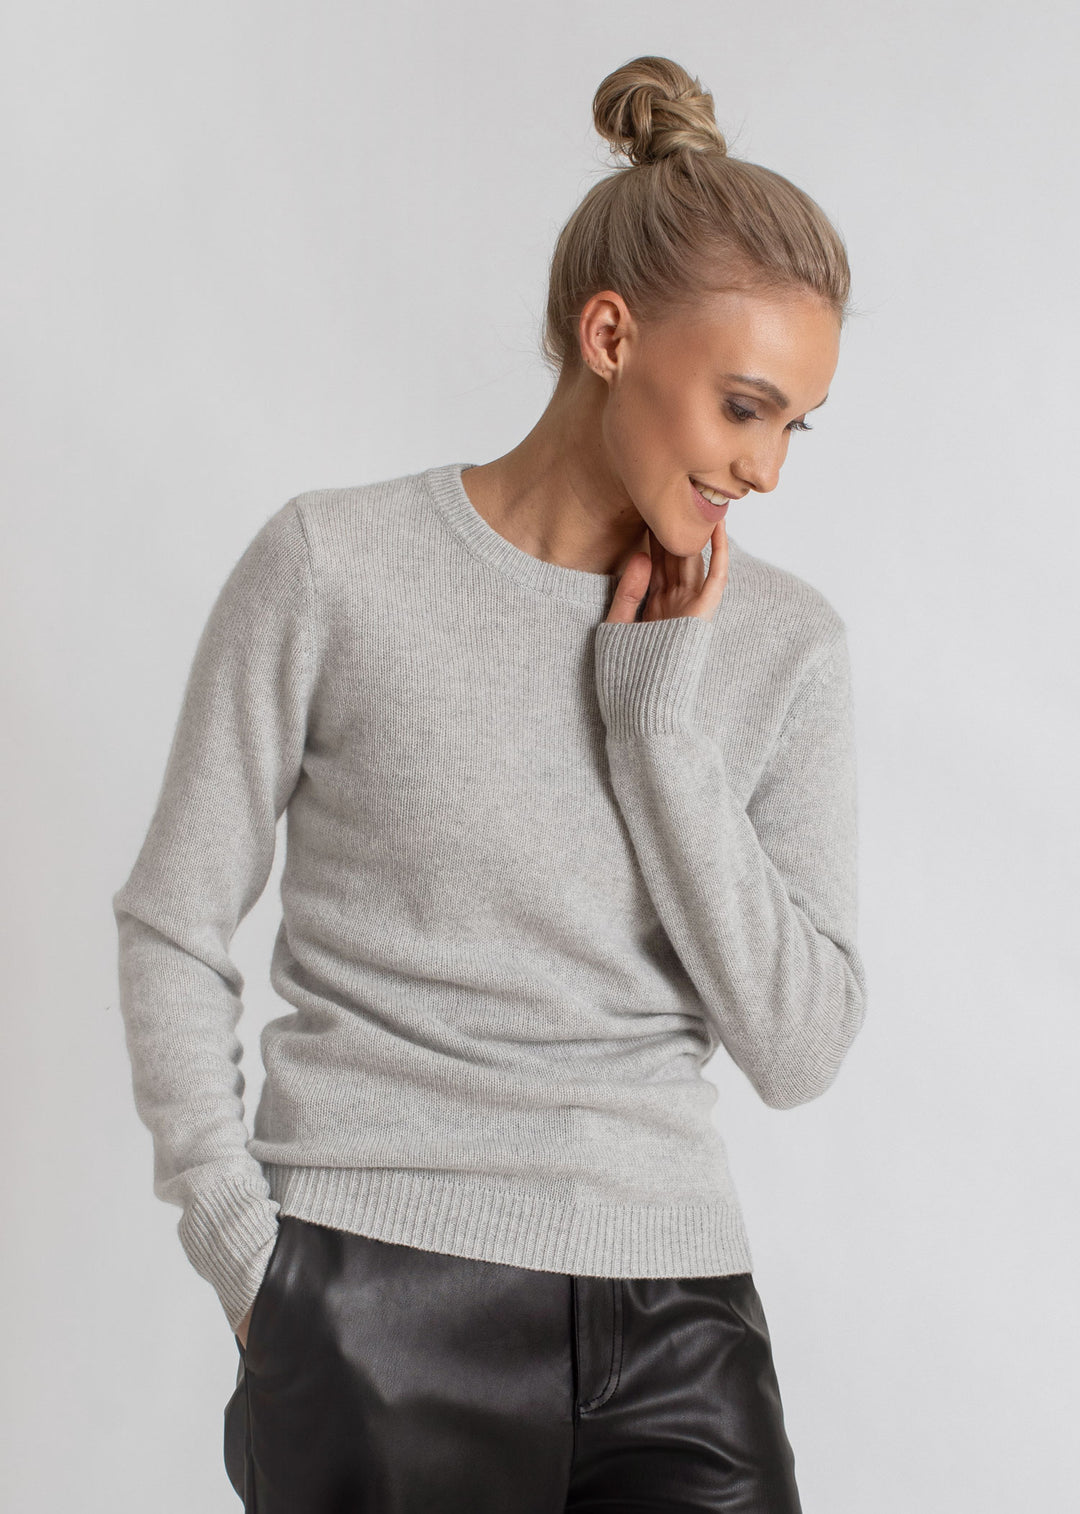 cashmere sweater light grey luxury kashmina norwegian design sustainable fashion